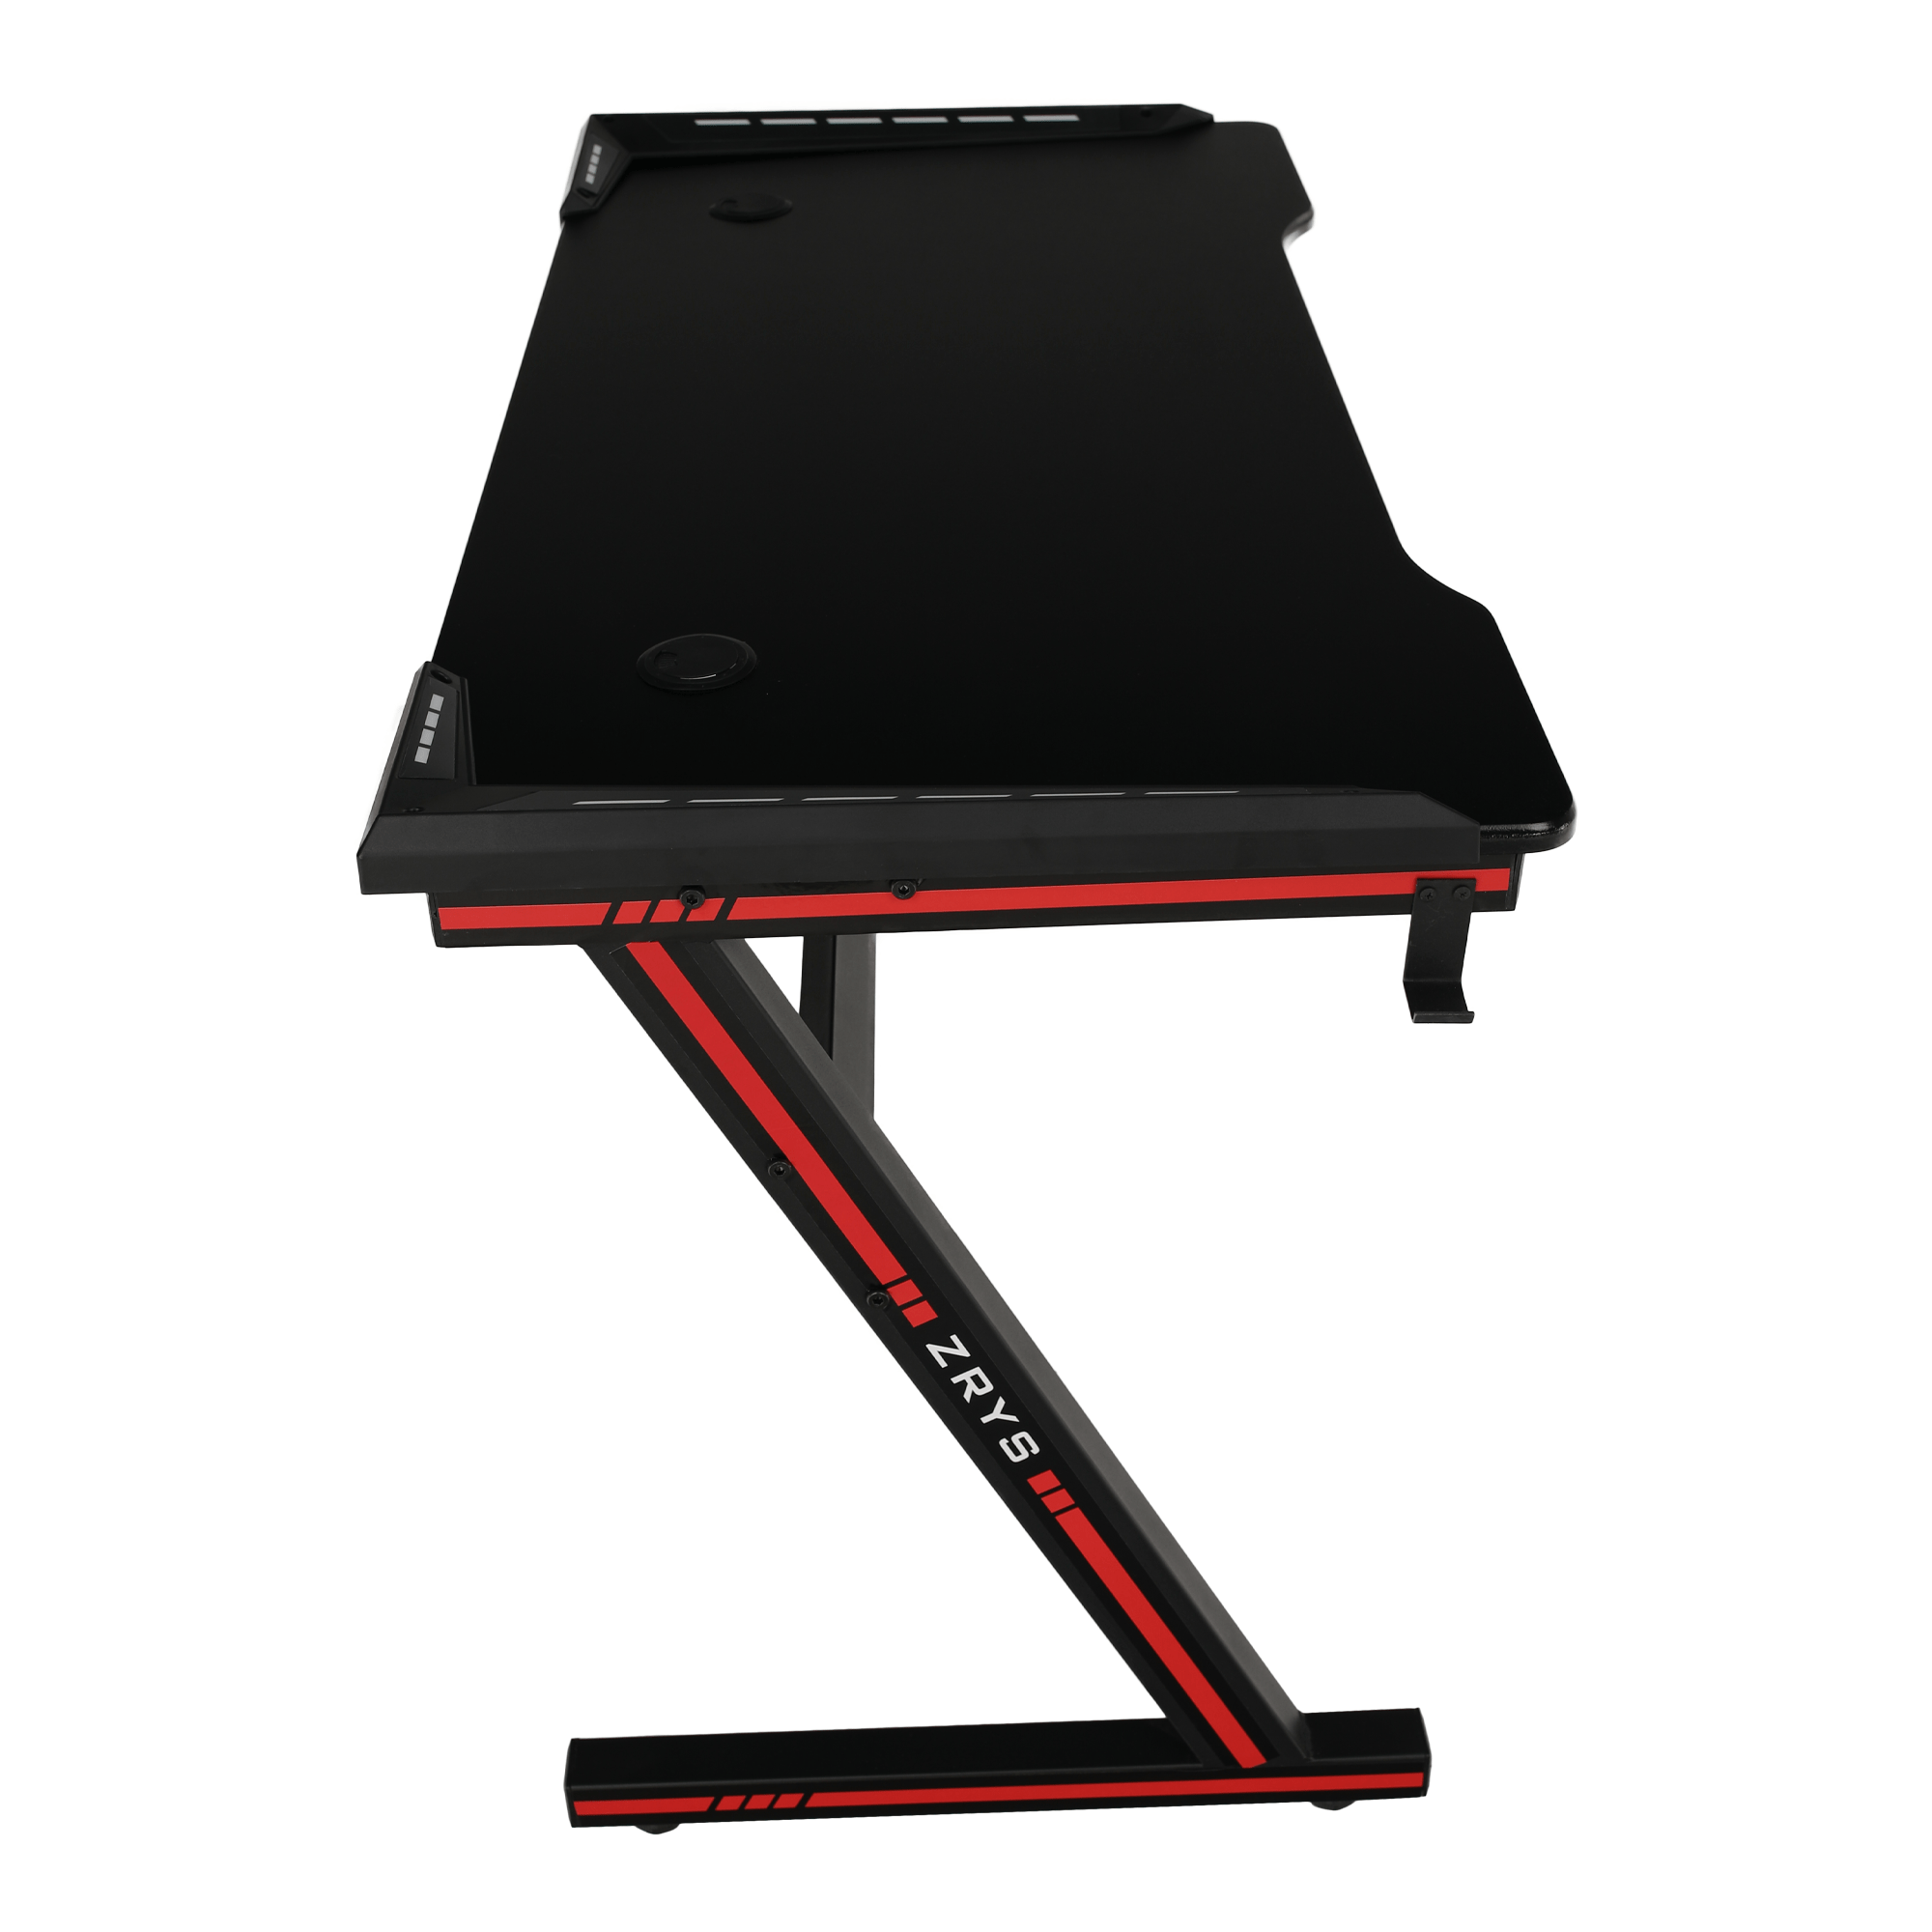 Gamer asztal/számítógépasztal, RGB LED világítással, fekete/piros, MACKENZIE 120cm